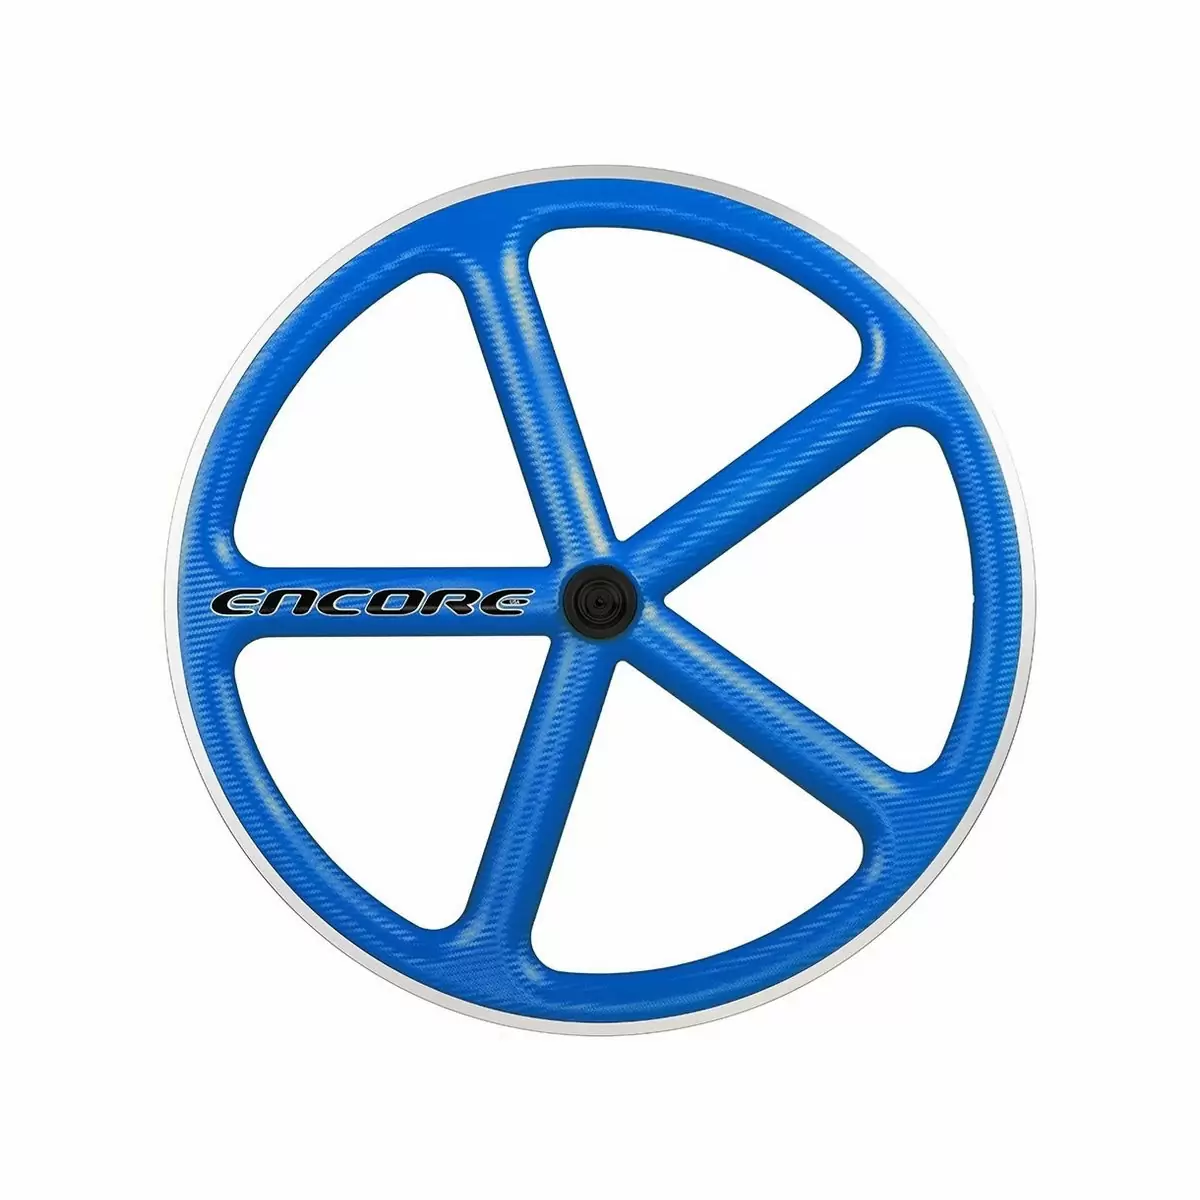 roda traseira 700c track 5 raios fibra de carbono azul msw - image